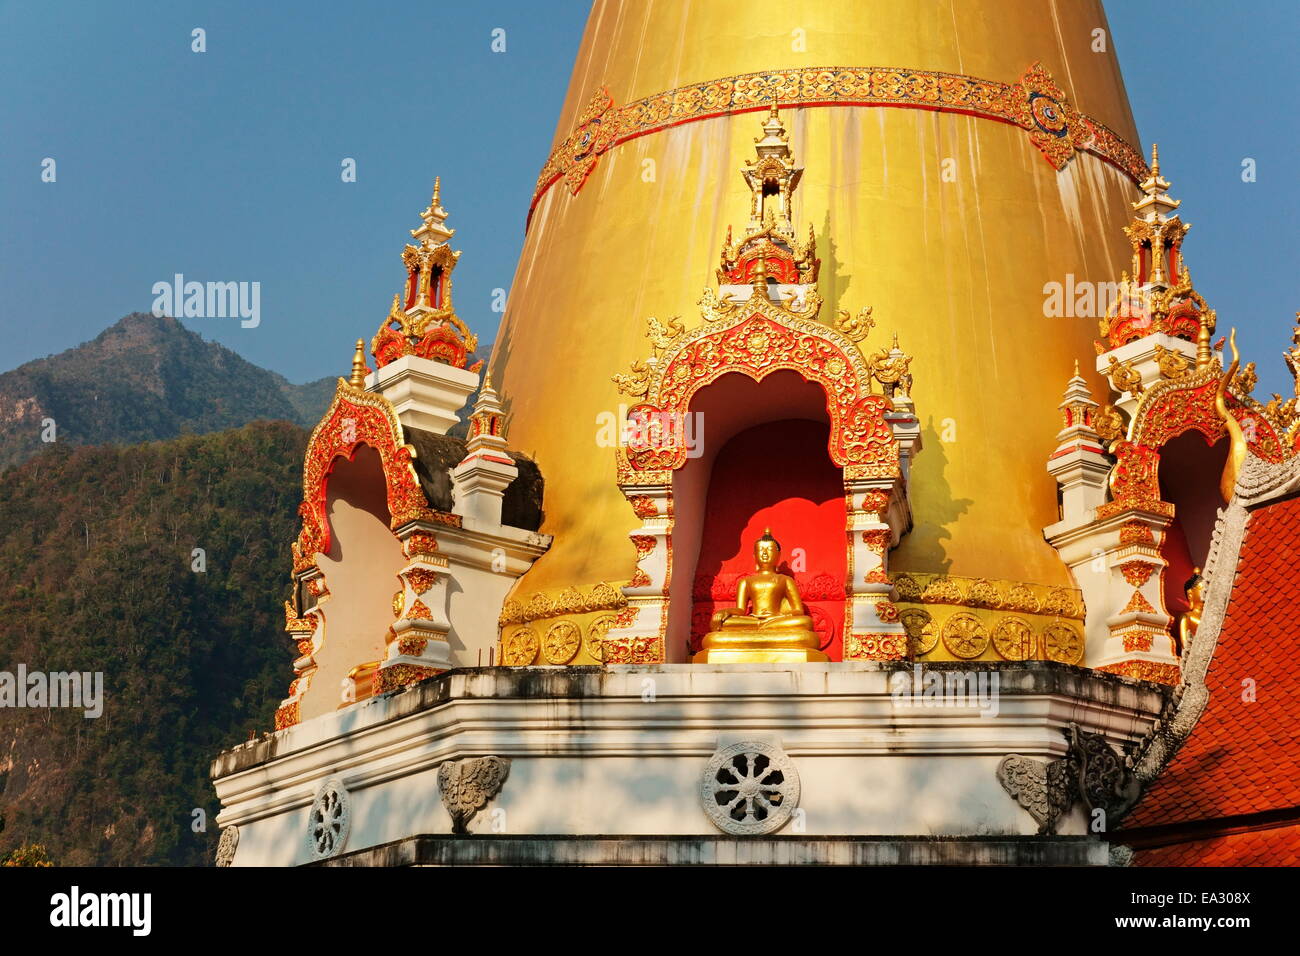 Tempio buddista e Doi Chiang Dao, Chiang Dao, Chiang Mai Provincia, Thailandia, Sud-est asiatico, in Asia Foto Stock